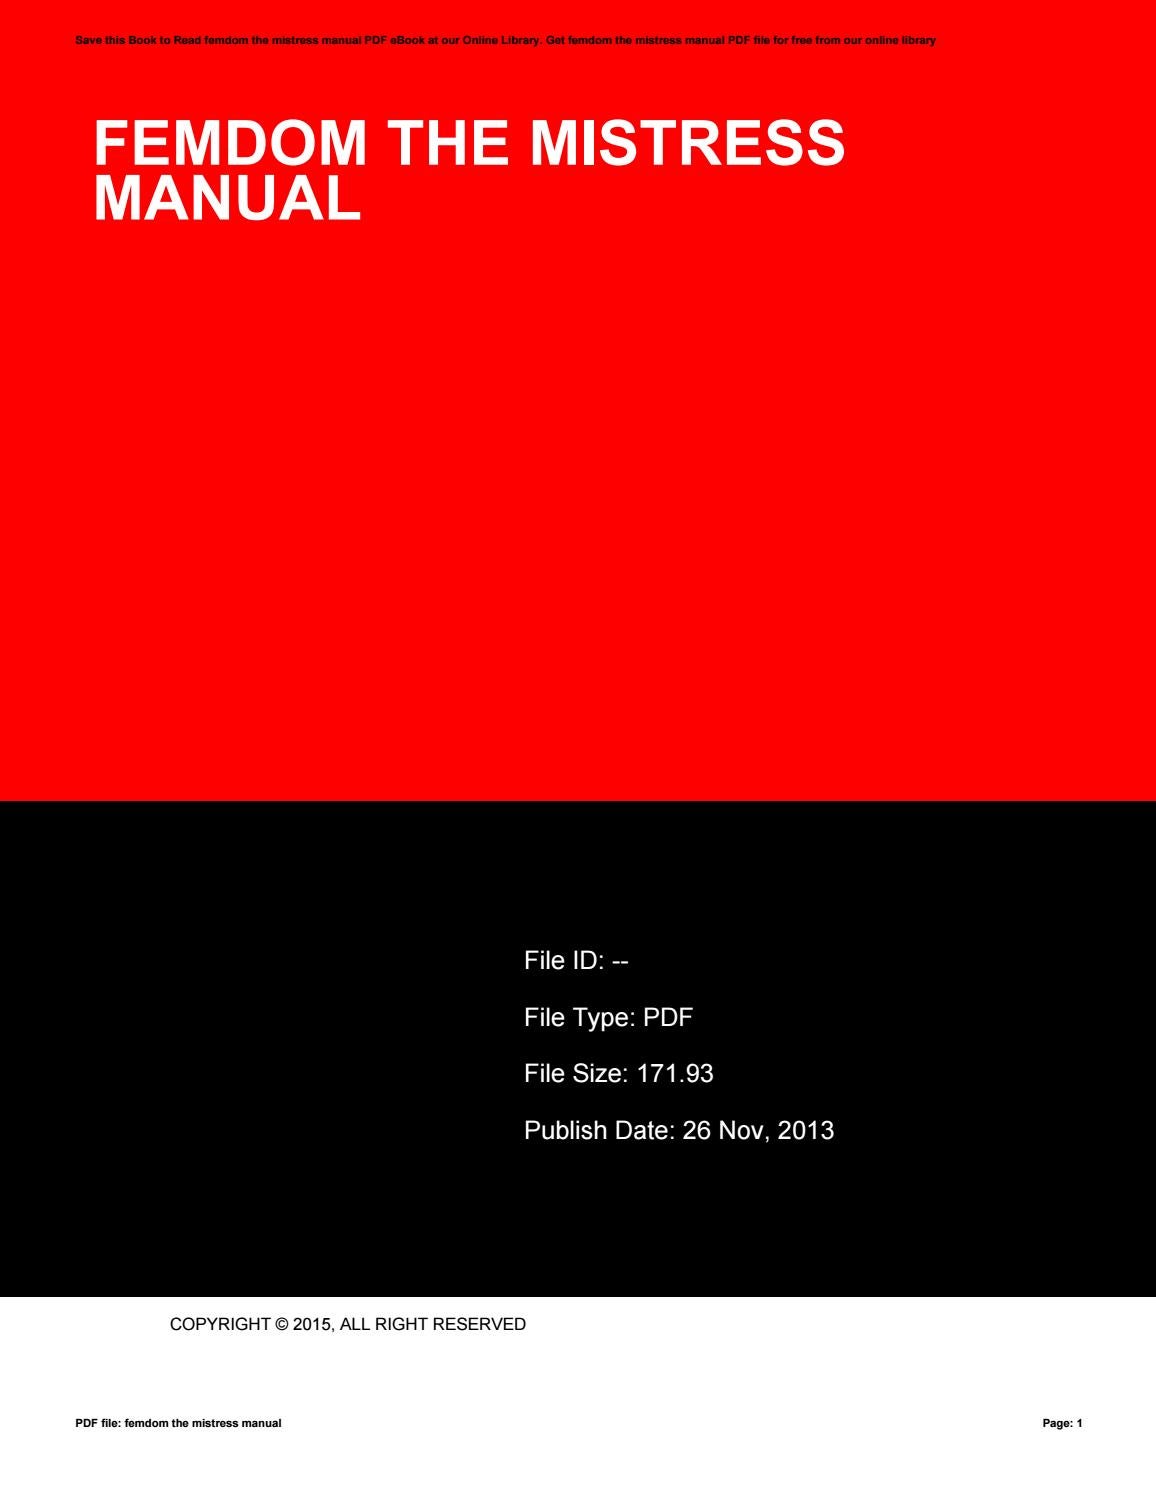 pdf femdom manual